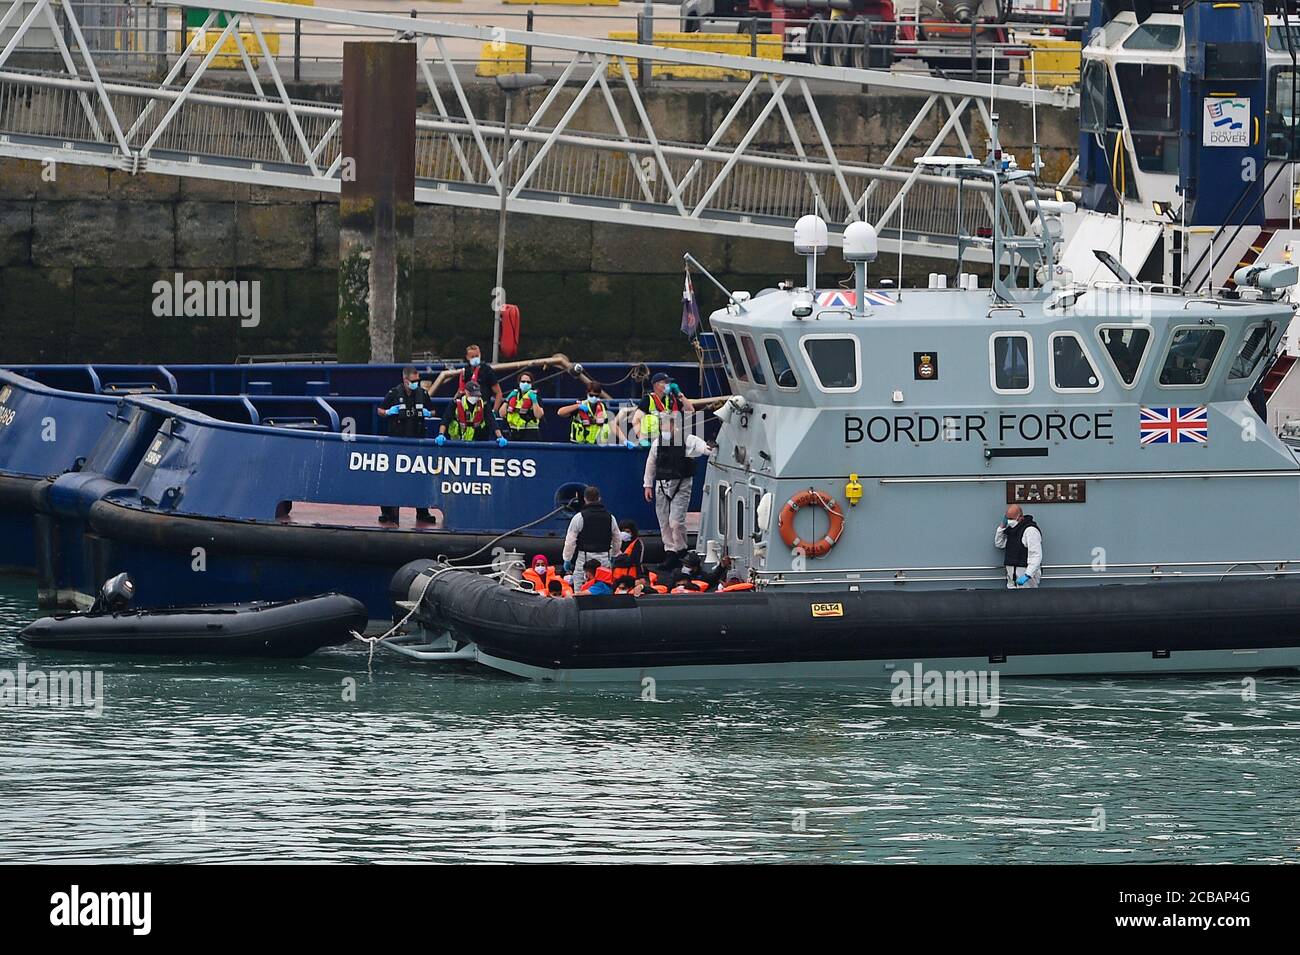 Un grupo de personas que se cree que son migrantes son traídas a Dover, Kent, por oficiales de la Fuerza Fronteriza después de varios pequeños incidentes de barcos en el Canal a principios de hoy. Foto de stock